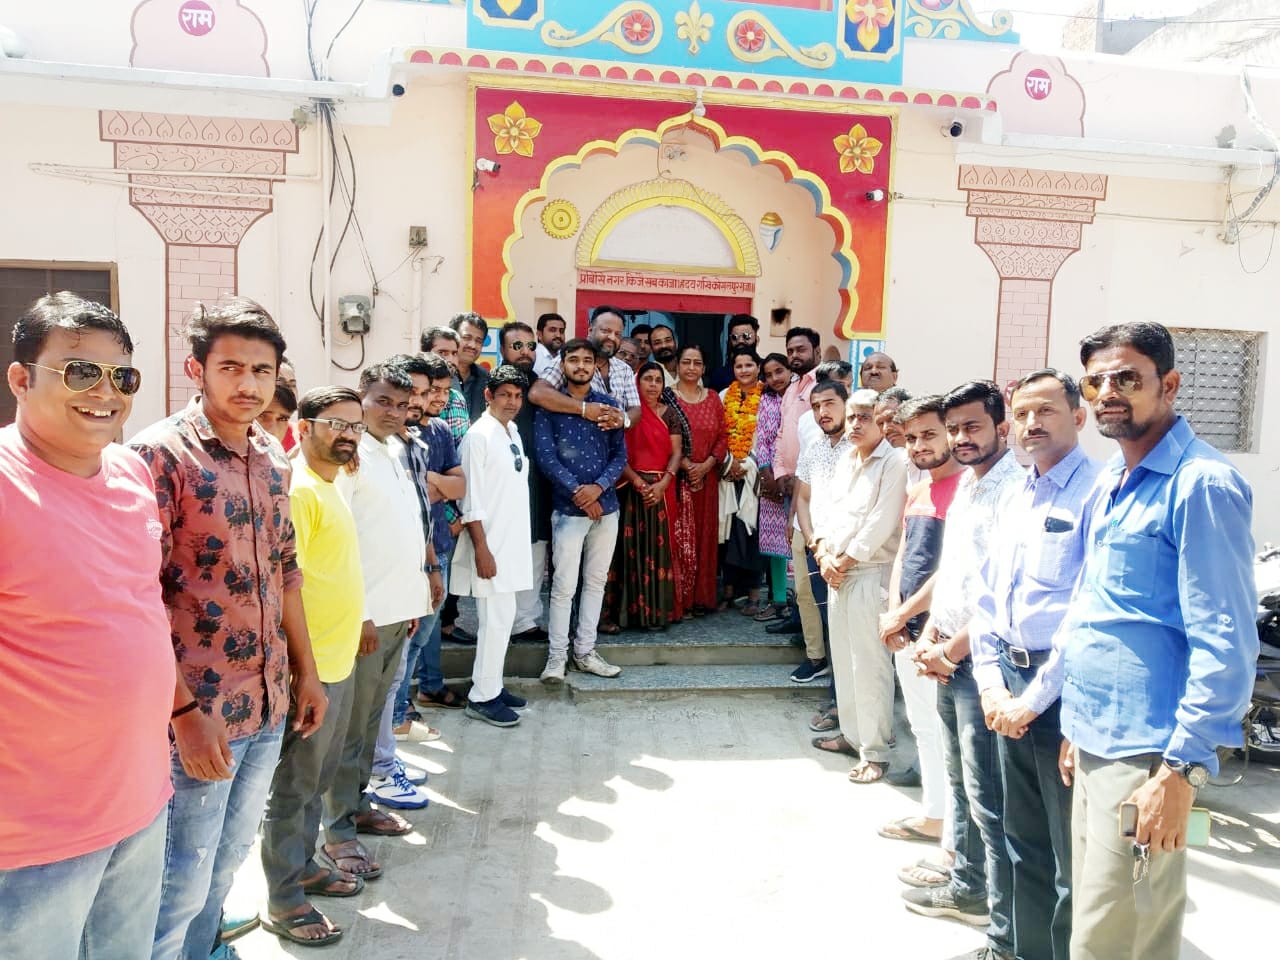 रामजी मंदिर ट्रस्ट परिवार ने नरगिस का स्वागत किया धूमधाम से